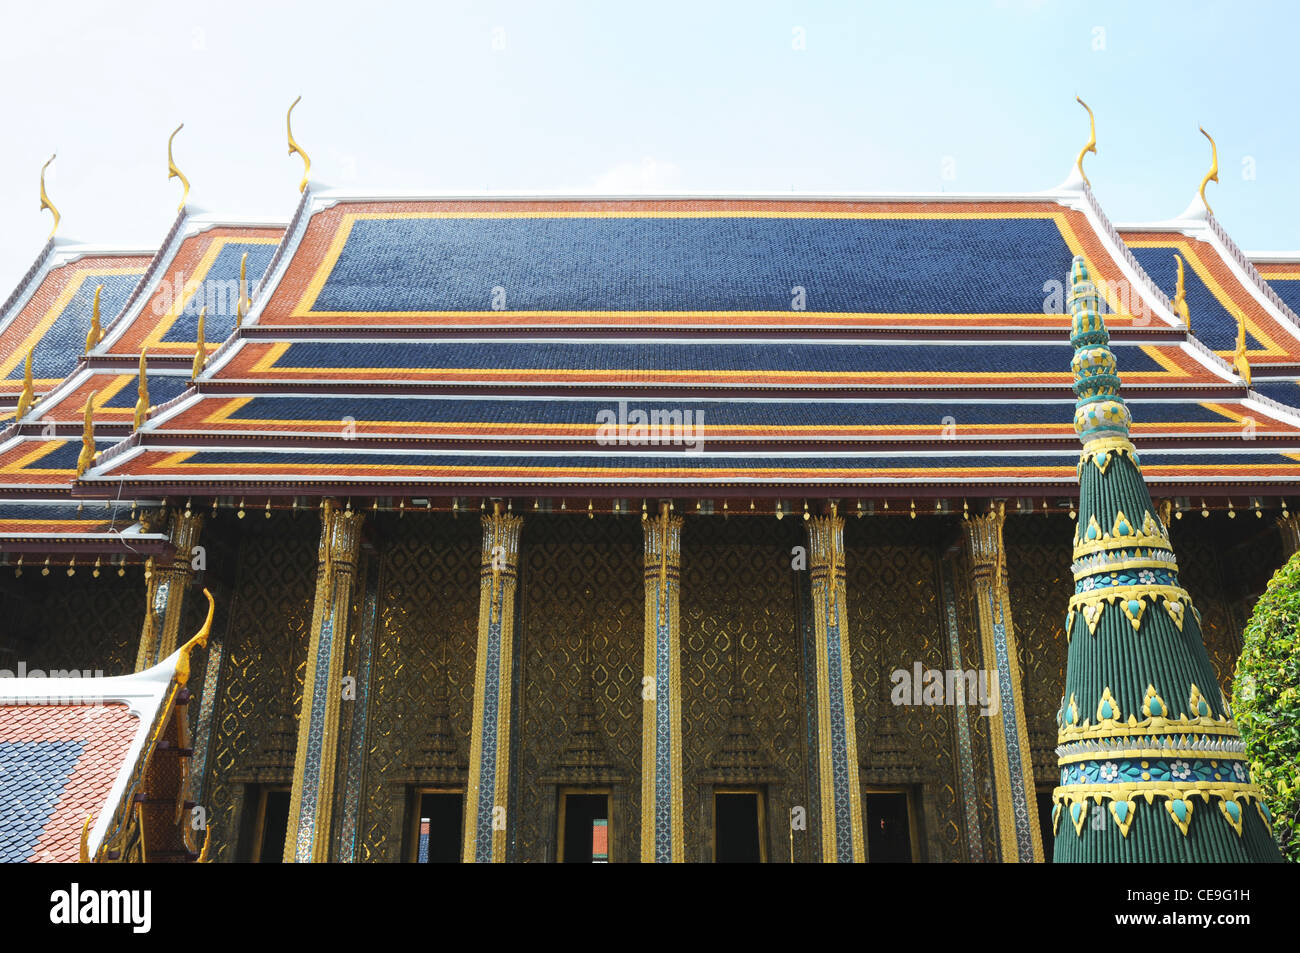 Gabled roof, Grand Palace, Bangkok, Thailand Stock Photo